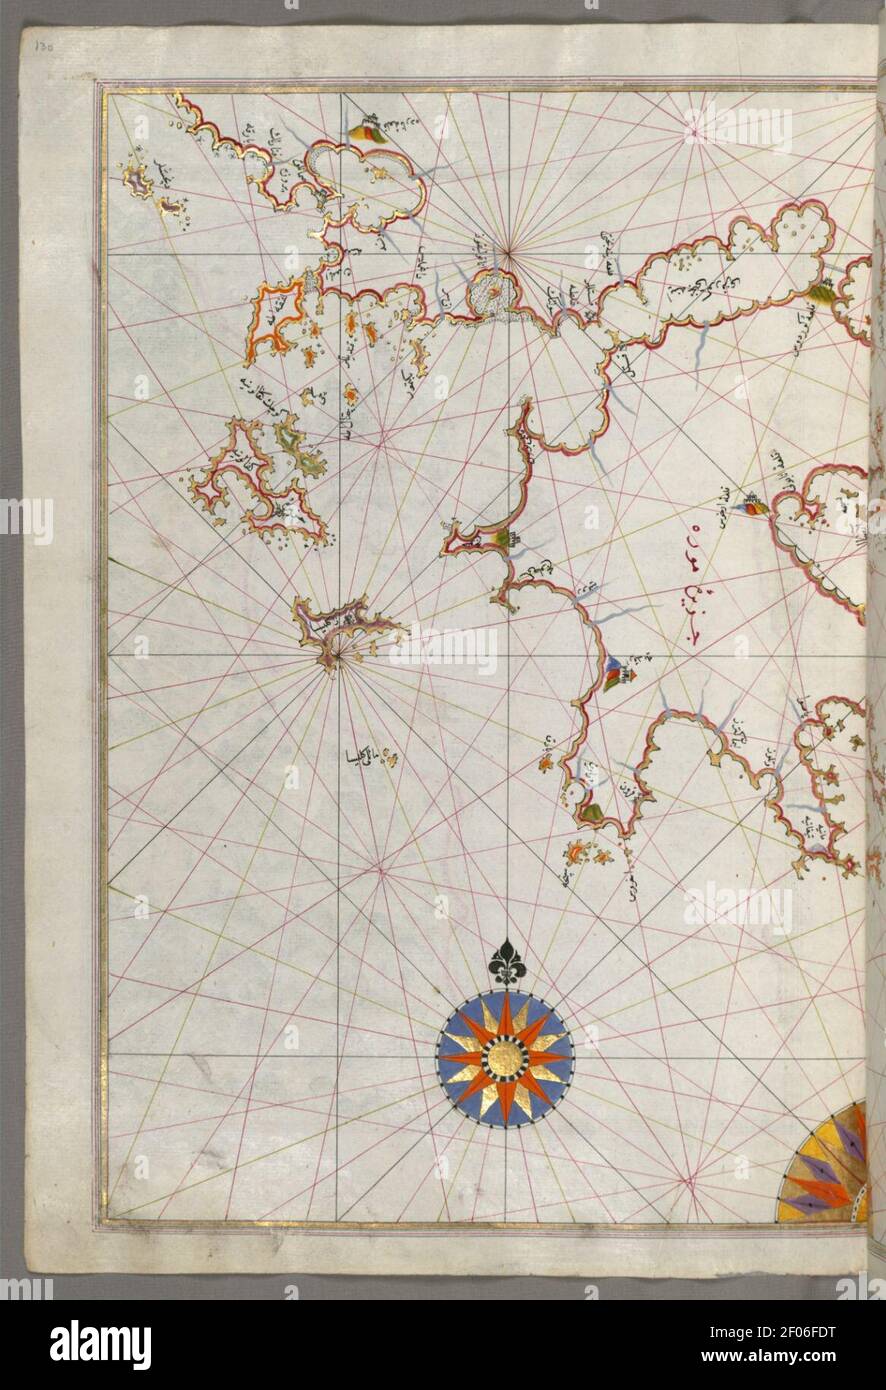 Piri Reis - Karte der Inseln Zakynthos, Kefalonia und Lefkada im Ionischen Meer Stockfoto